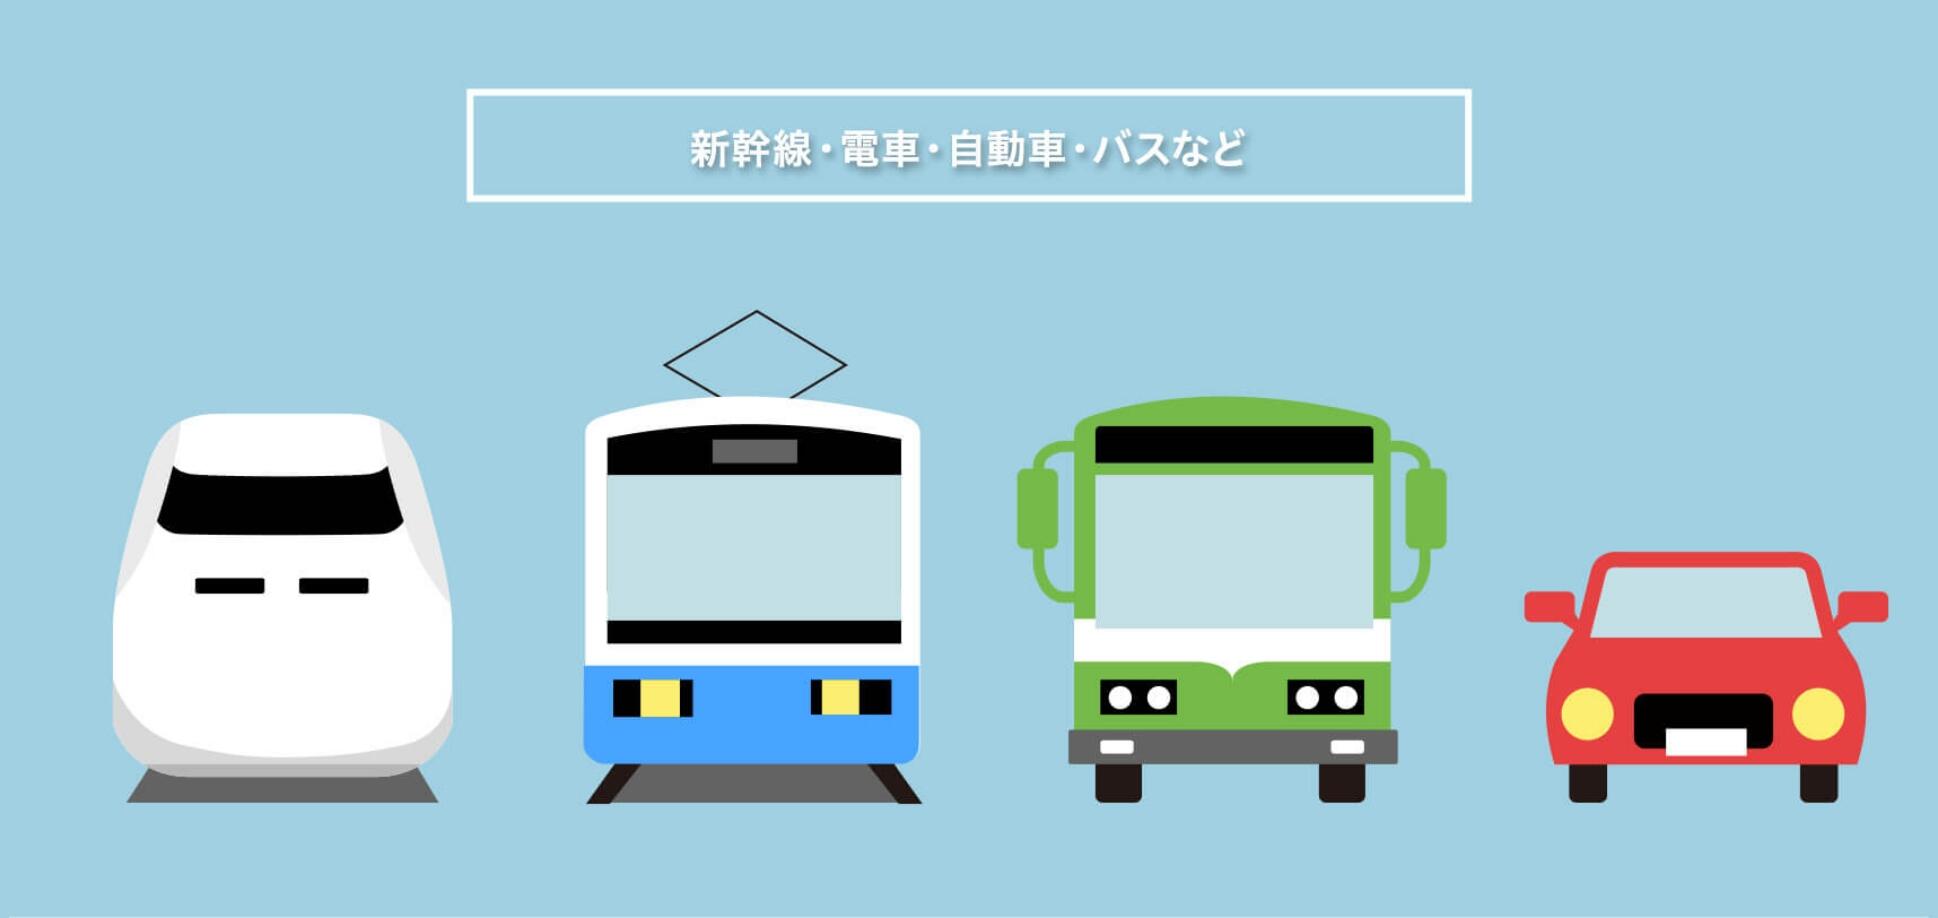 新幹線・電車・自動車・バスなど